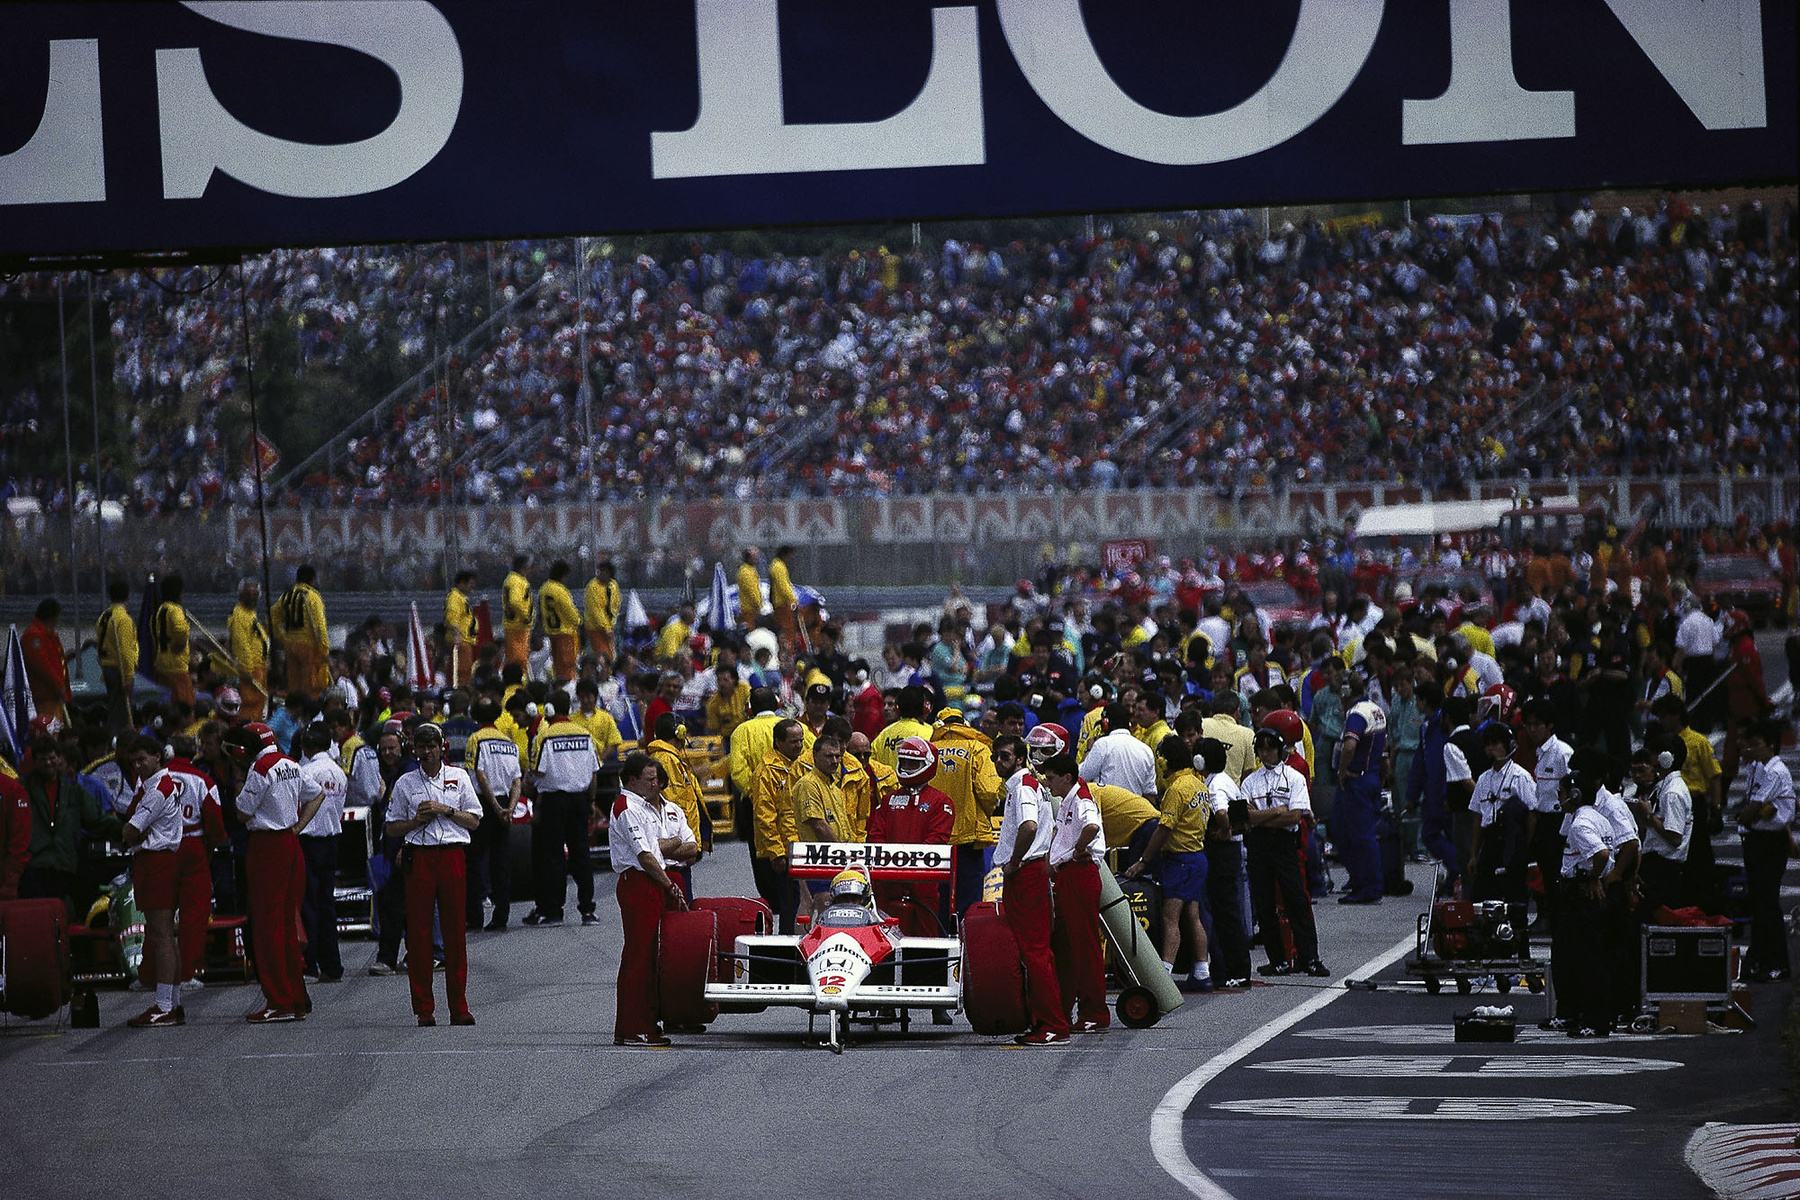 Ayrton Senna 1960-1994